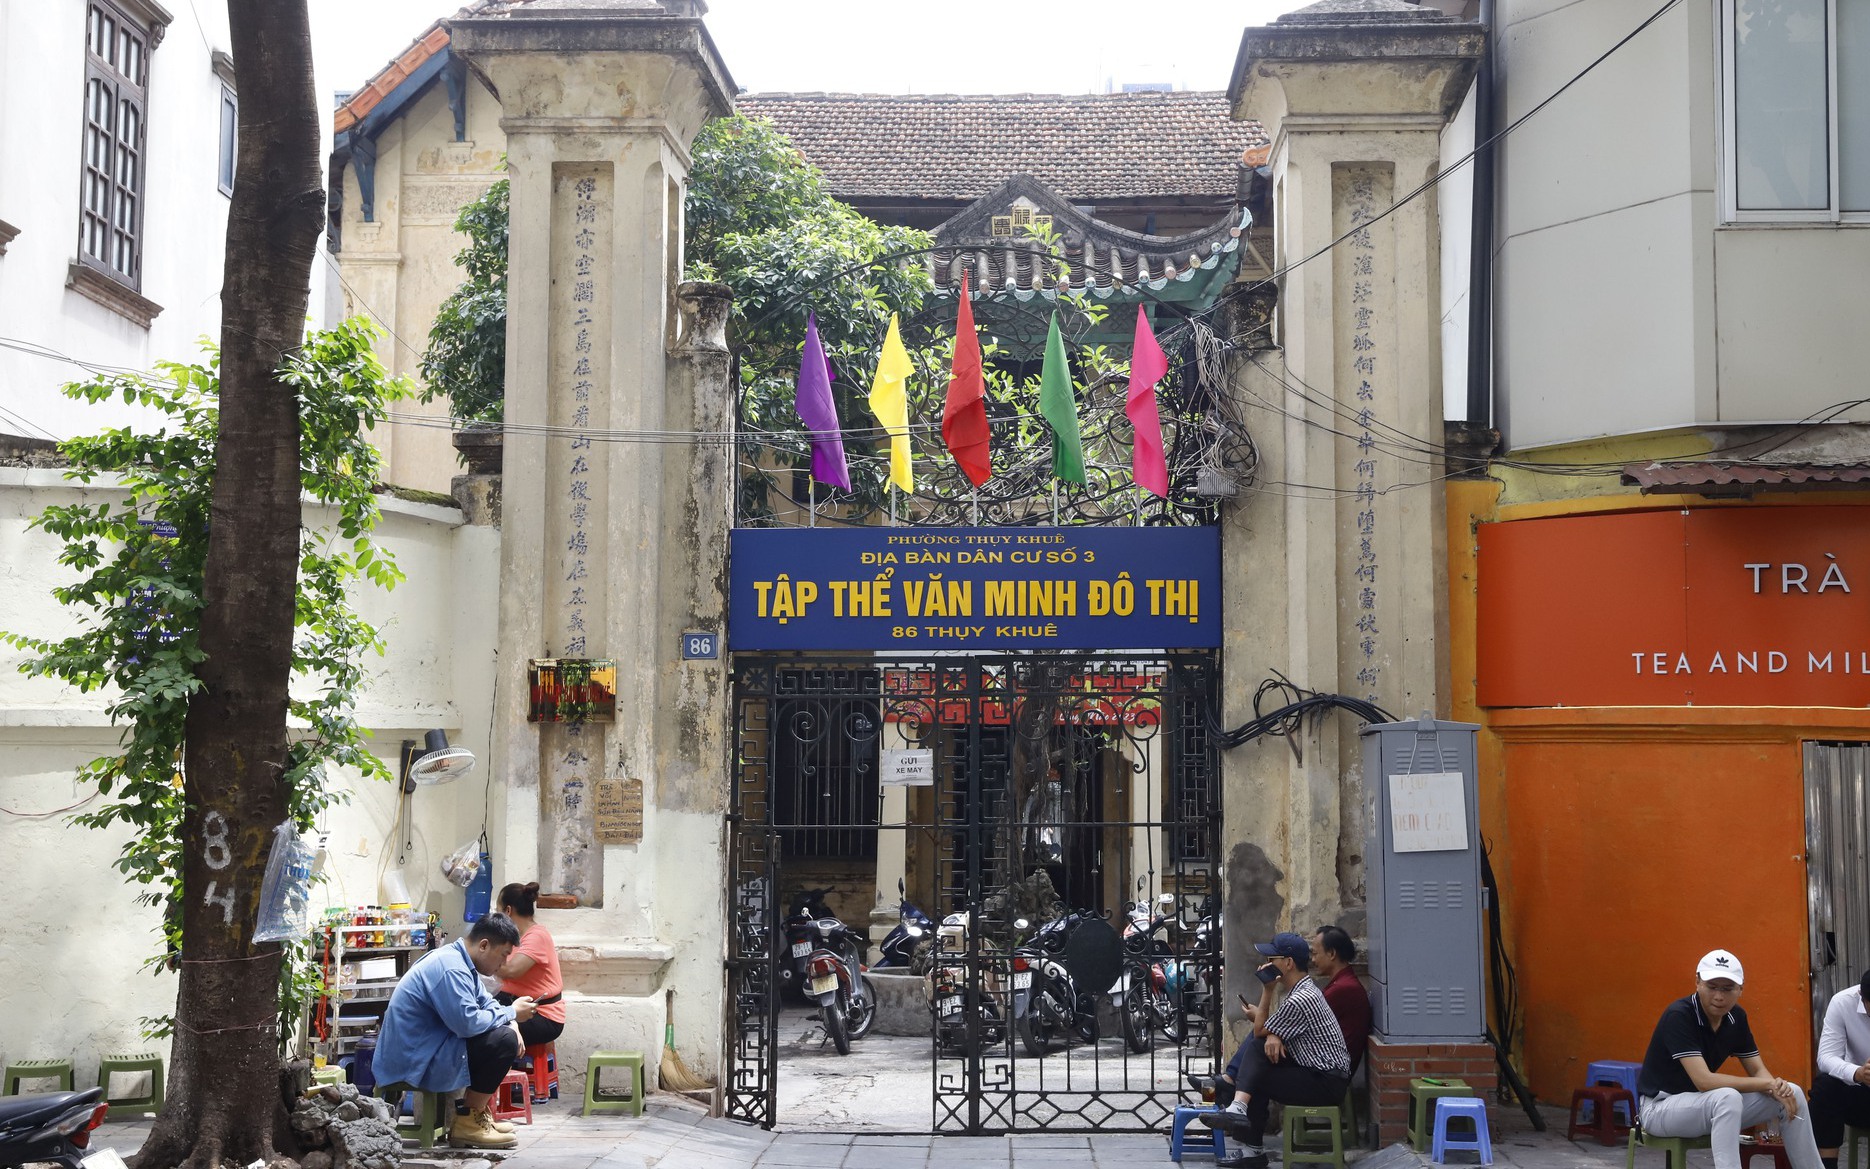 Khám phá biệt thự 100 năm tuổi ẩn sau chiếc cổng sắt cổ duy nhất tại Hà Nội ghi năm khánh thành